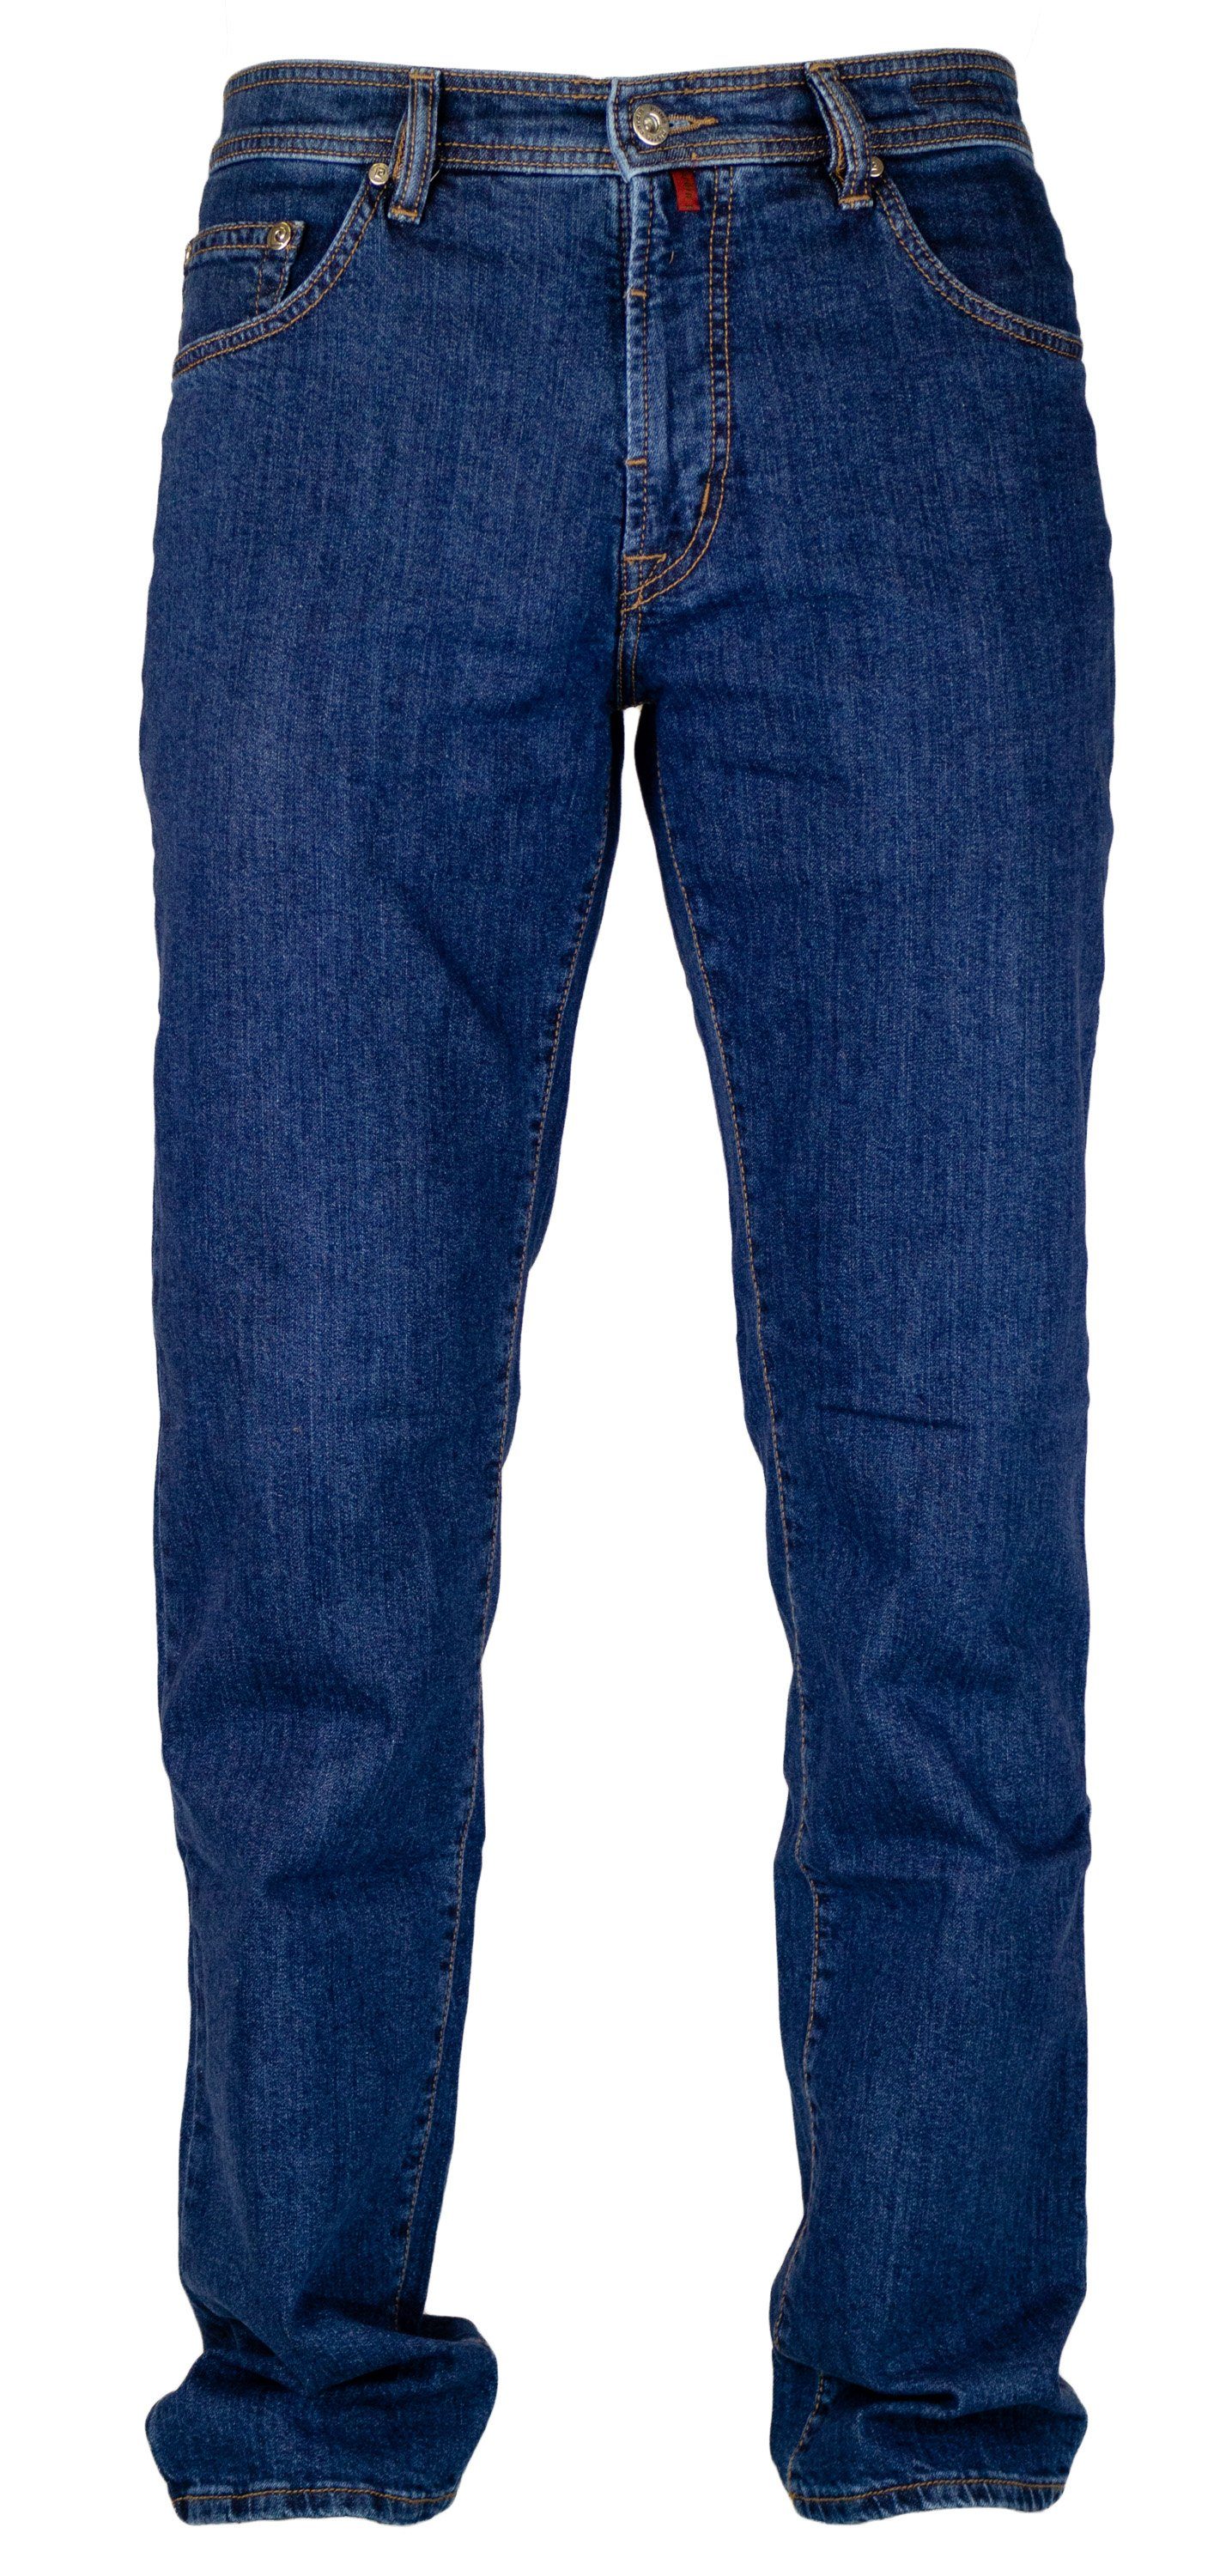 Pierre Cardin 5-Pocket-Jeans »PIERRE CARDIN DIJON night blue 3231 911.47«  online kaufen | OTTO